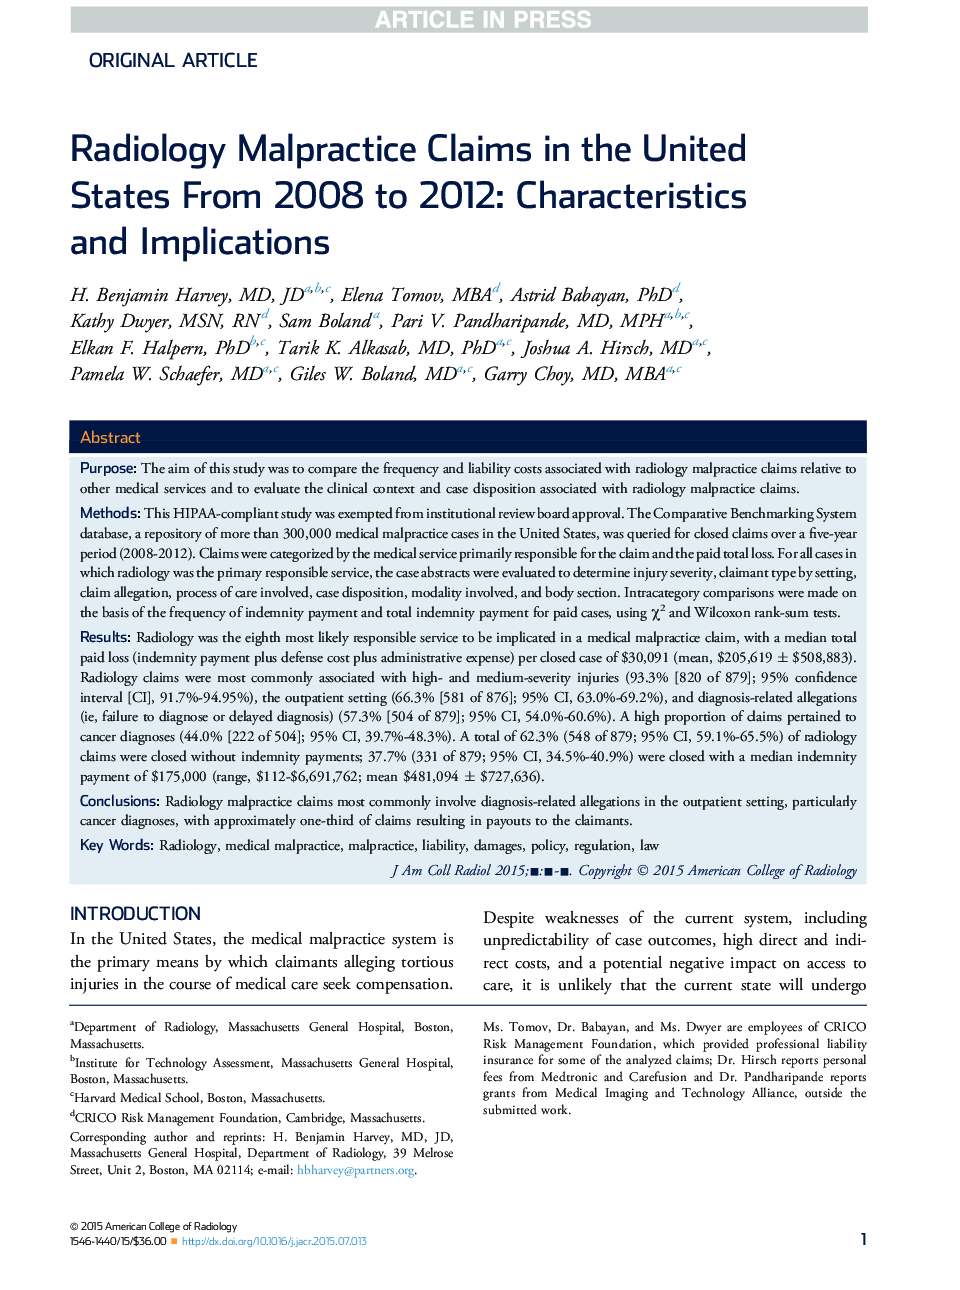 ادعای خسارت رادیولوژیک در ایالات متحده از سال 2008 تا 2012: ویژگی ها و پیامدهای 